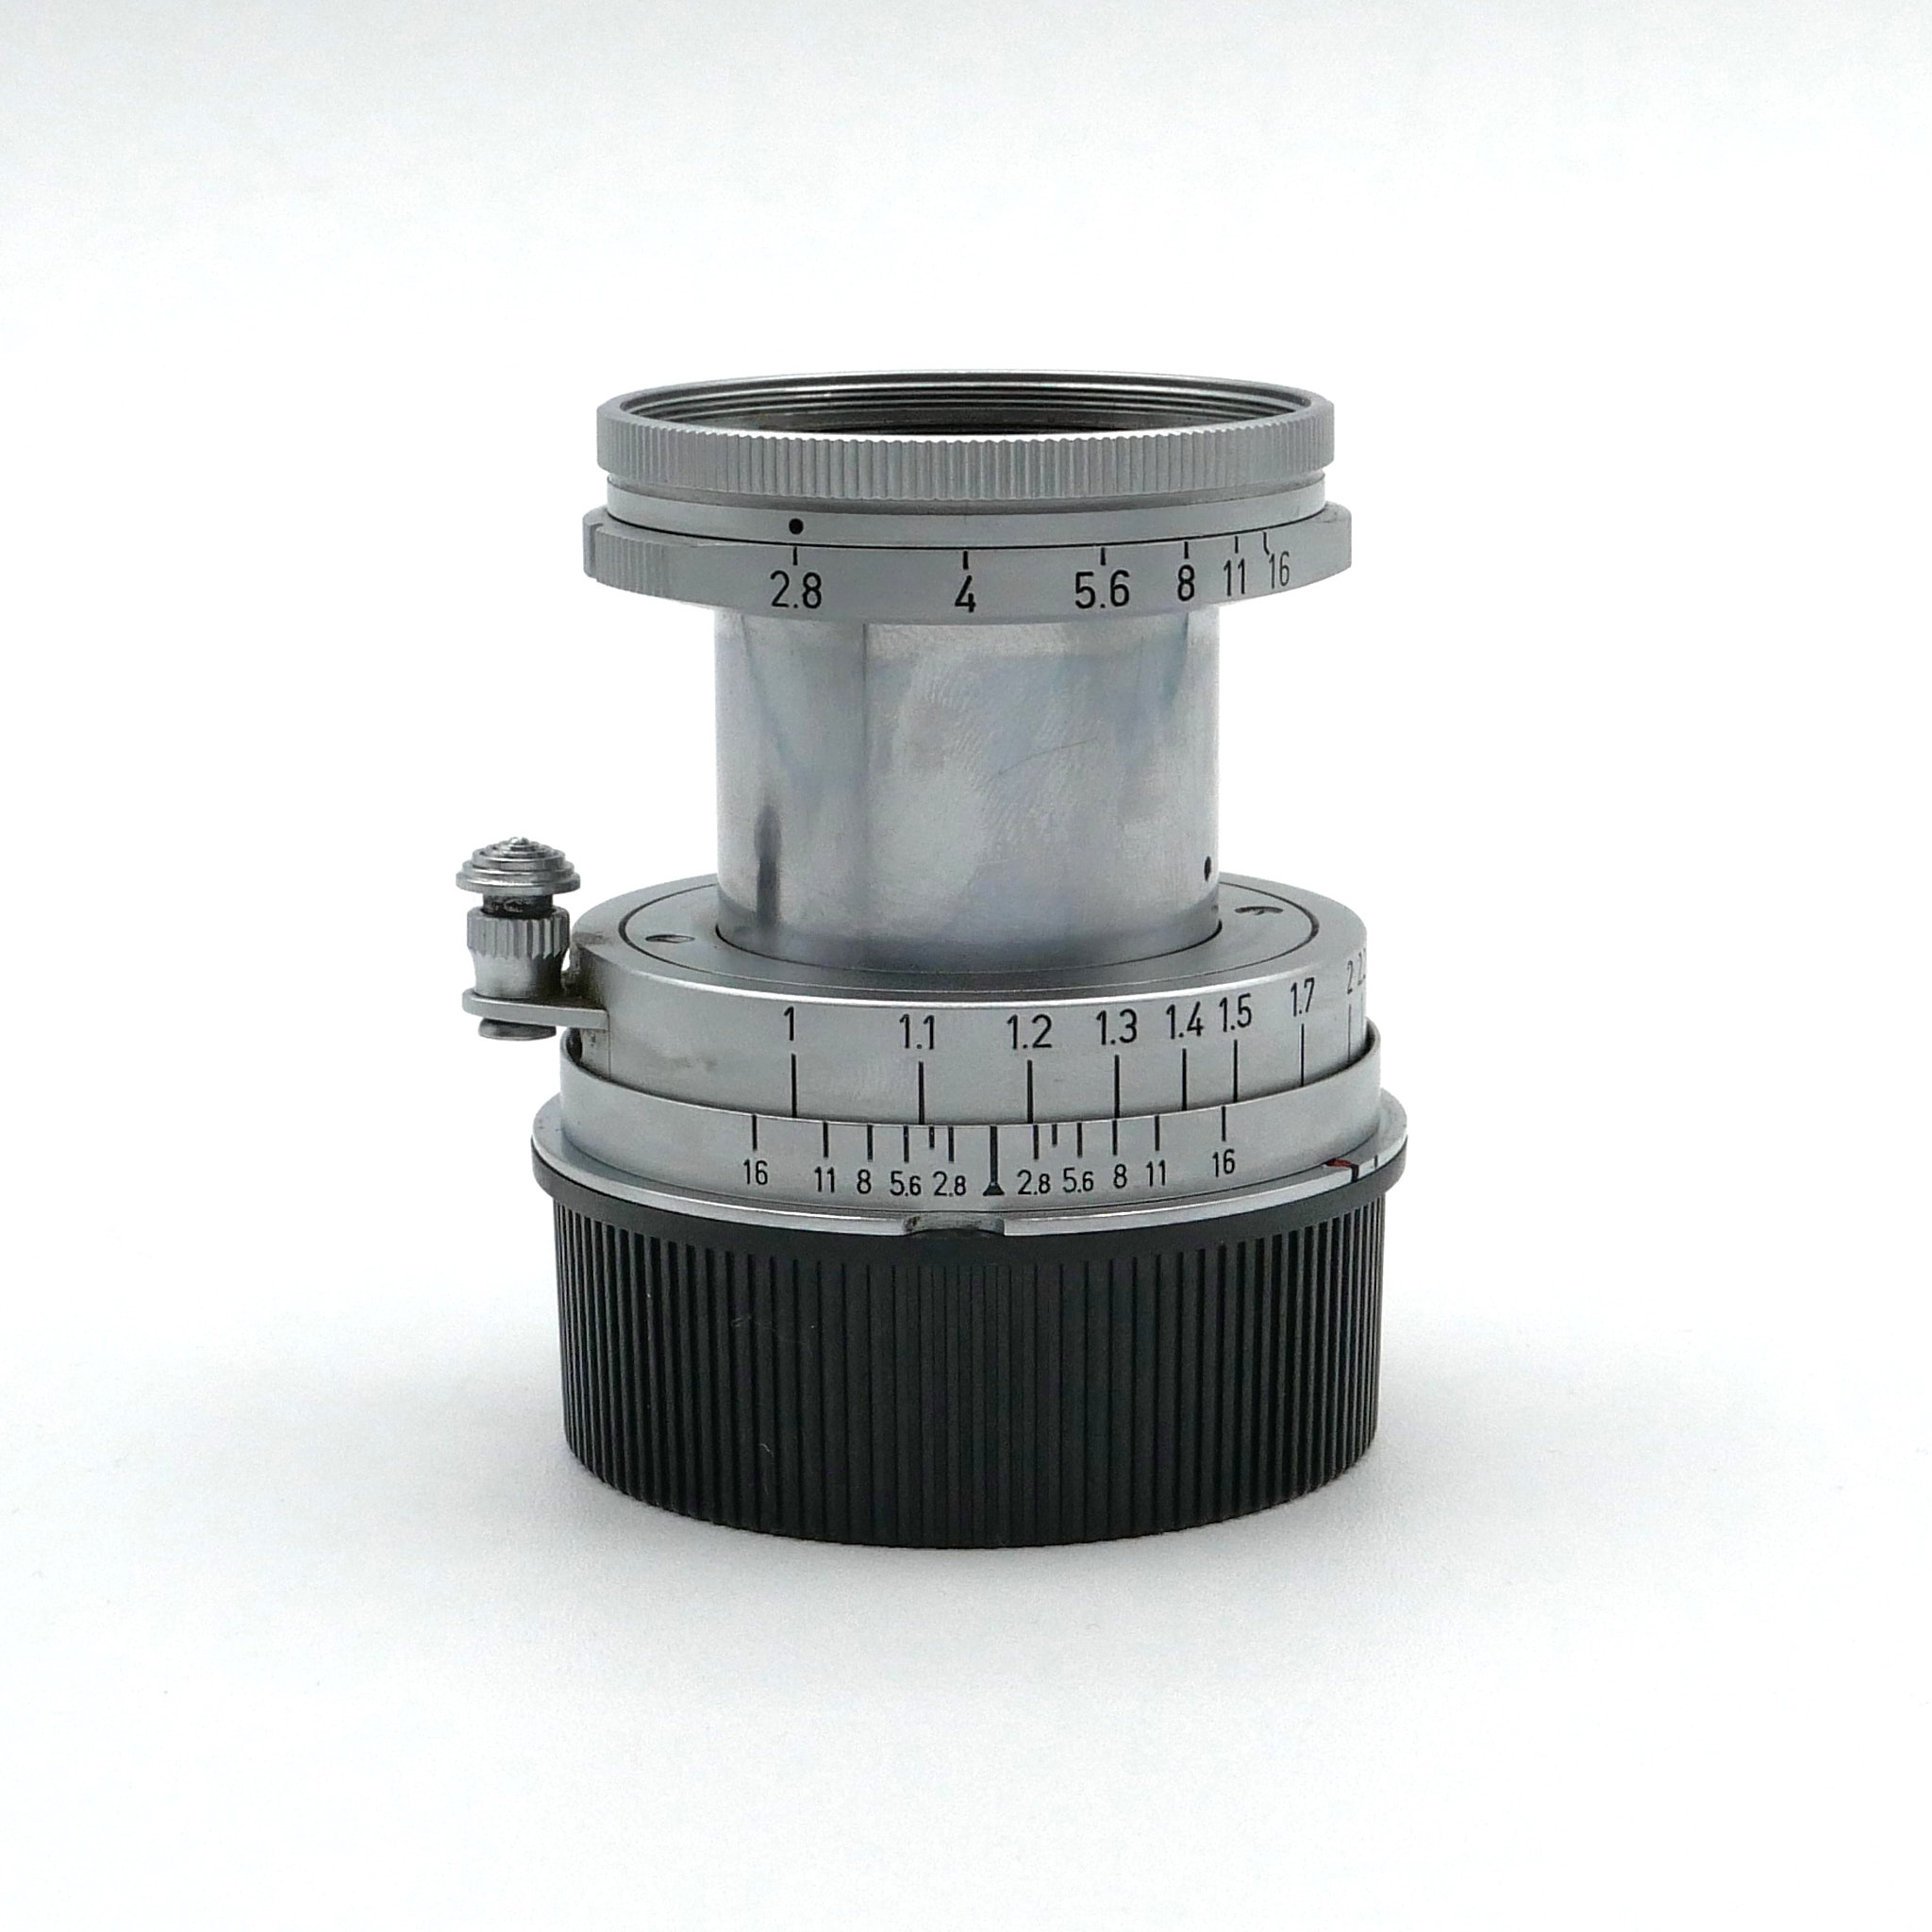 Leica Elmar-M 5cm f/2.8